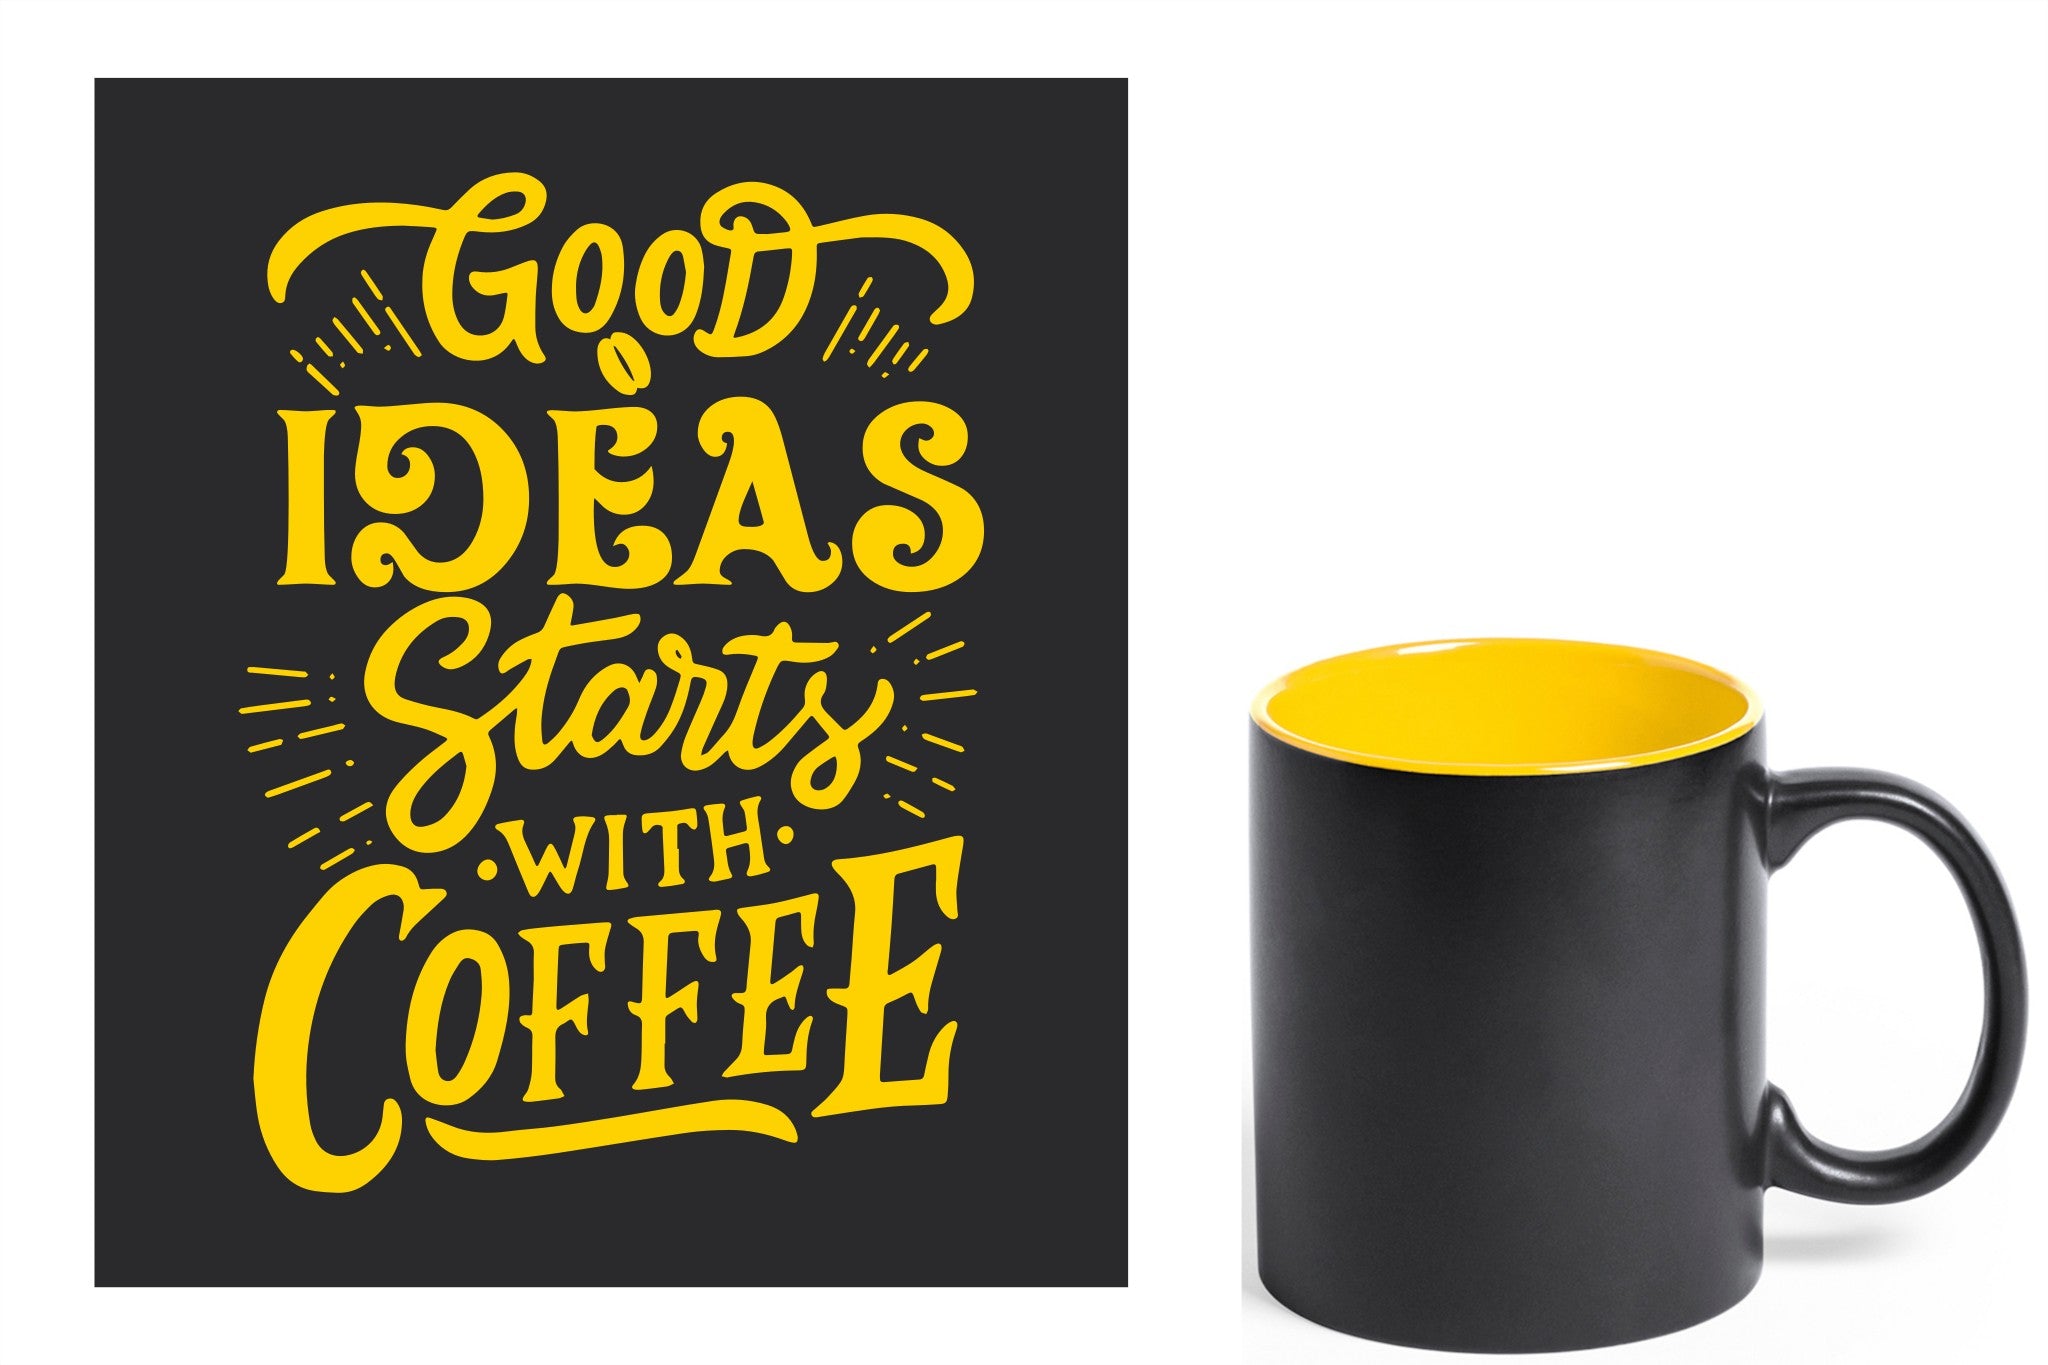 zwarte keramische mok met gele gravure  'Good ideas starts with coffee'.